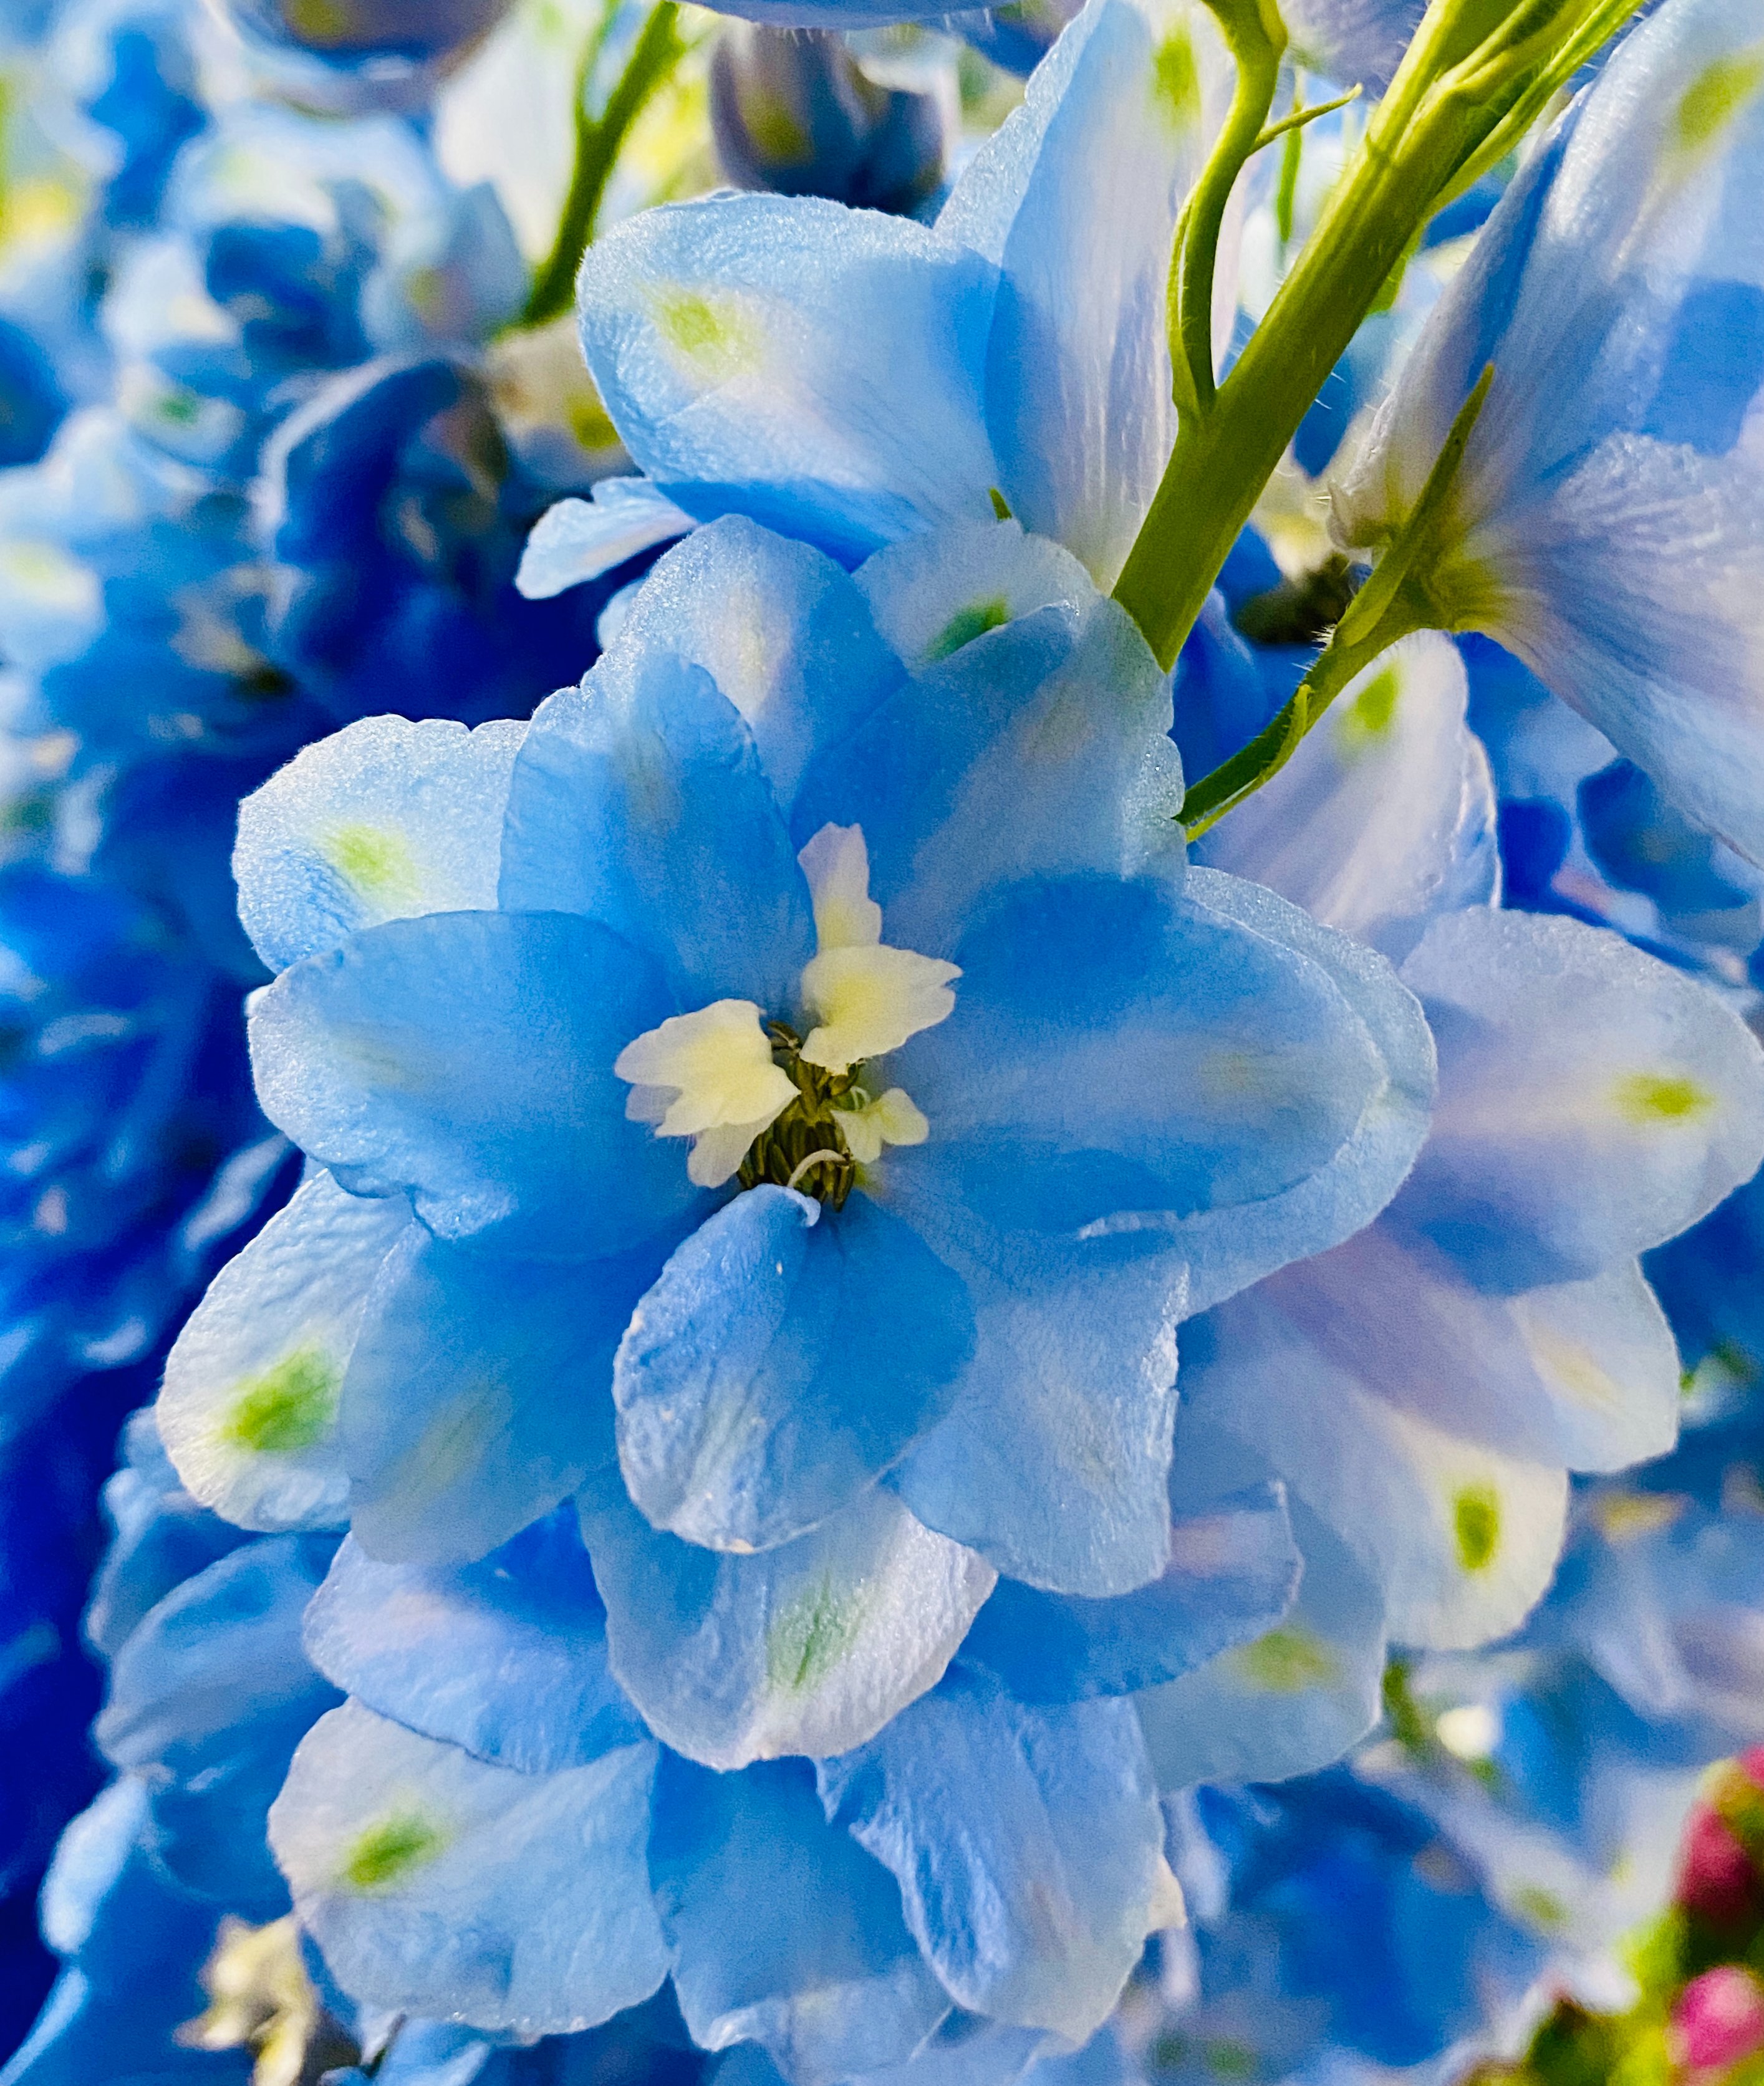 تويتر 紬 つむぎ Tsumugi Flower على تويتر 青い花の代表 柔軟剤のｃｍでもお目にかかれます スプレータイプのデルフィニウム こちらはジャイアント系 私の鼻ではこの花の香りはわかりません どんな香りがするのだろう 柔軟剤買いに行こう